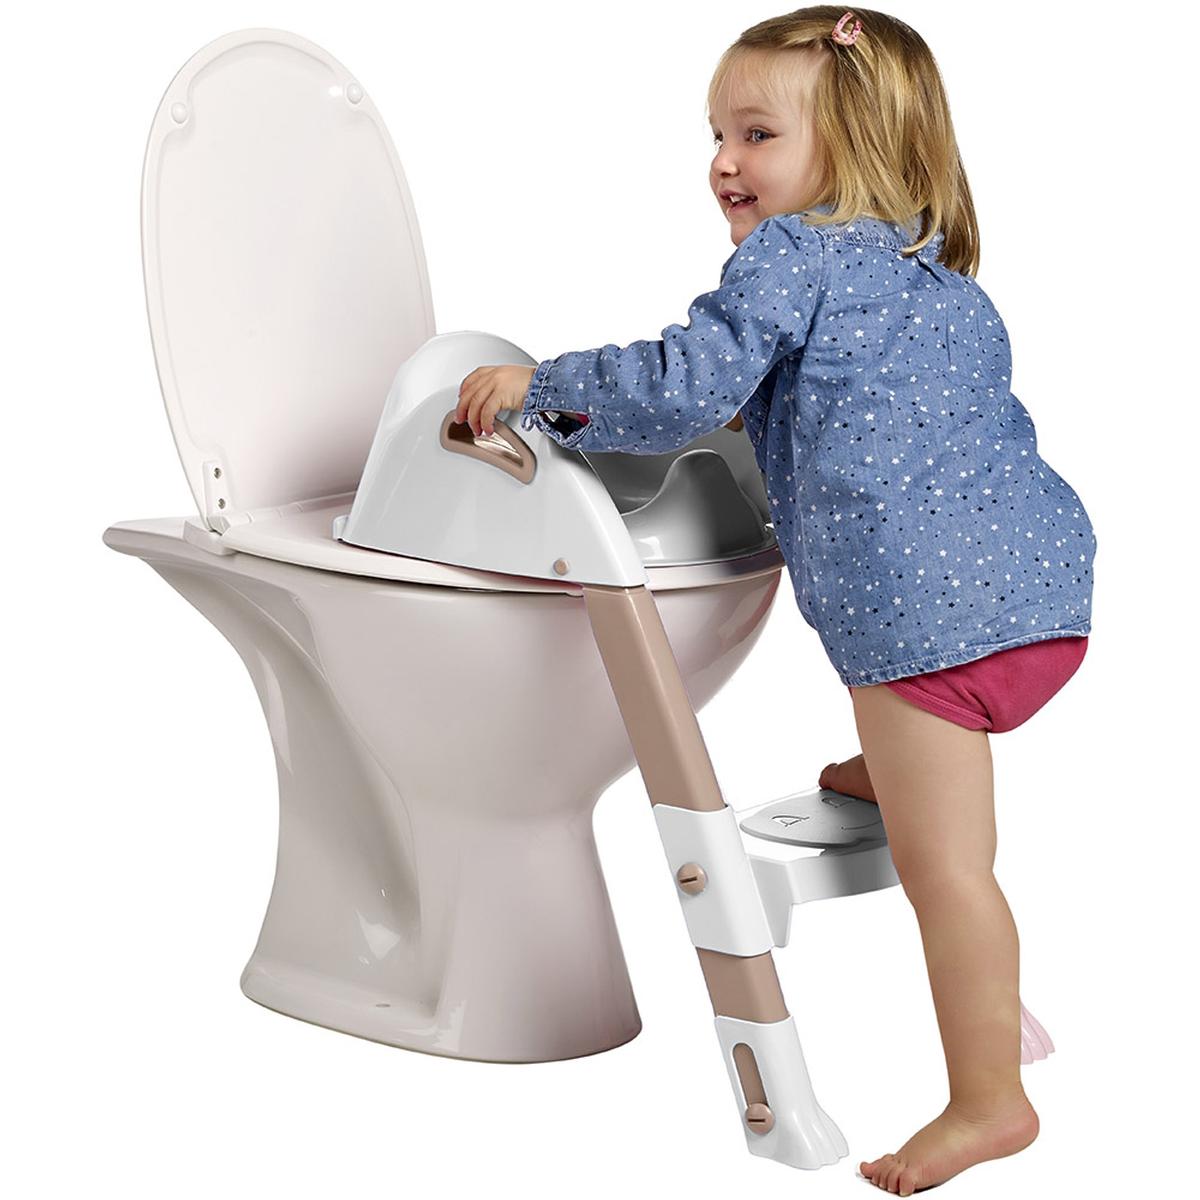 Milanuncios - Adaptador WC niños, con escaleras y pleg